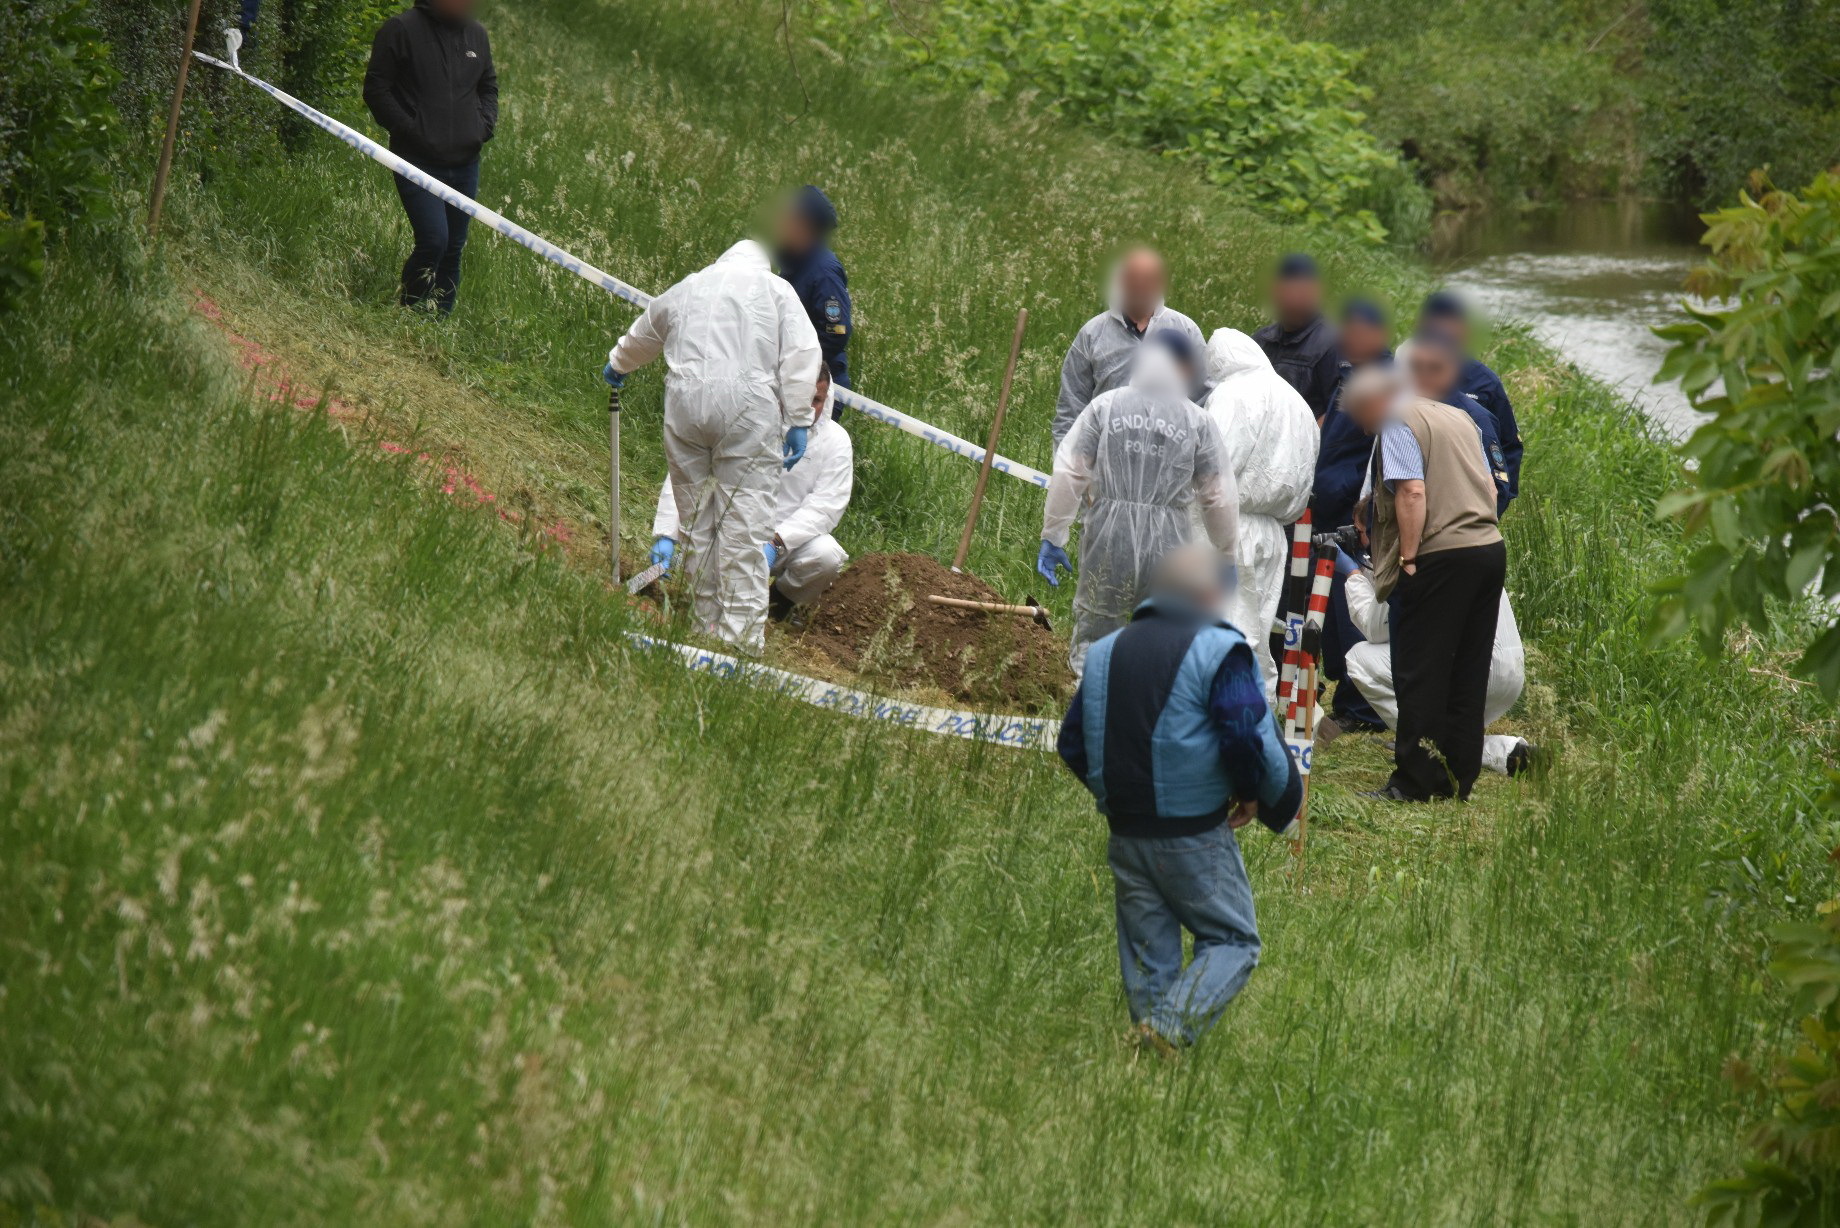 Patakparton elásott holttestet találhattak Szombathelyen